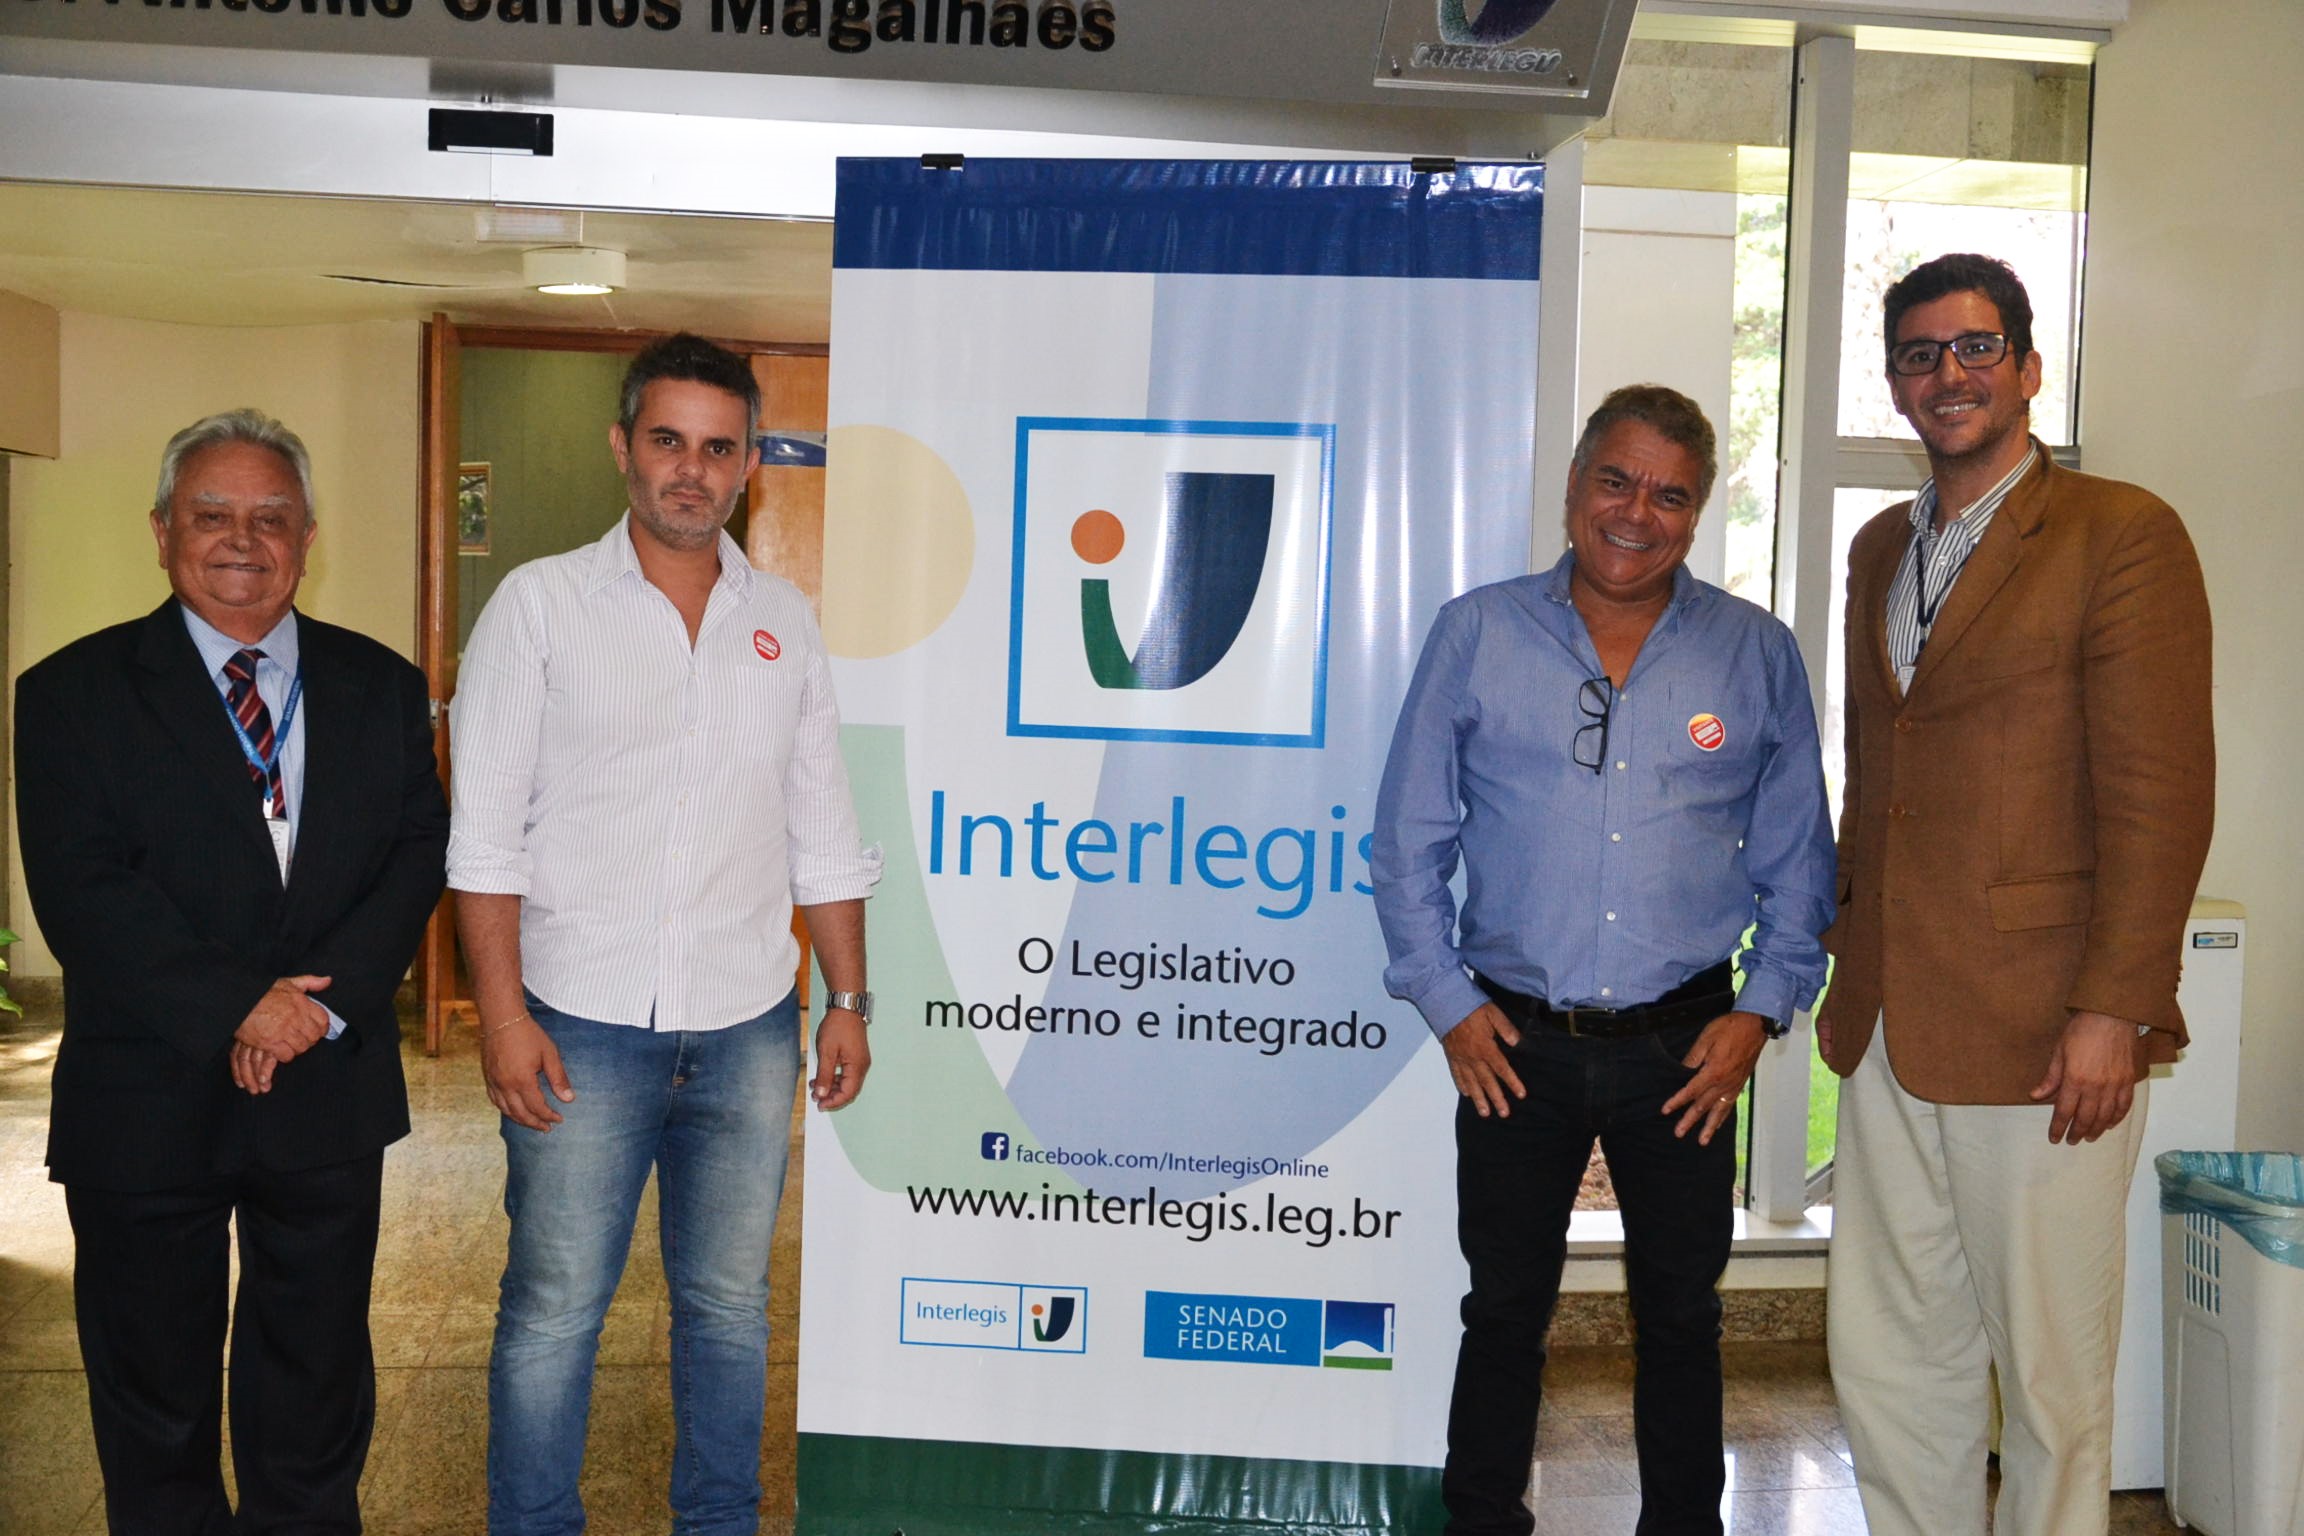 Vereadores de Itabirito – MG conhecem programas de transparência e modernização do Interlegis